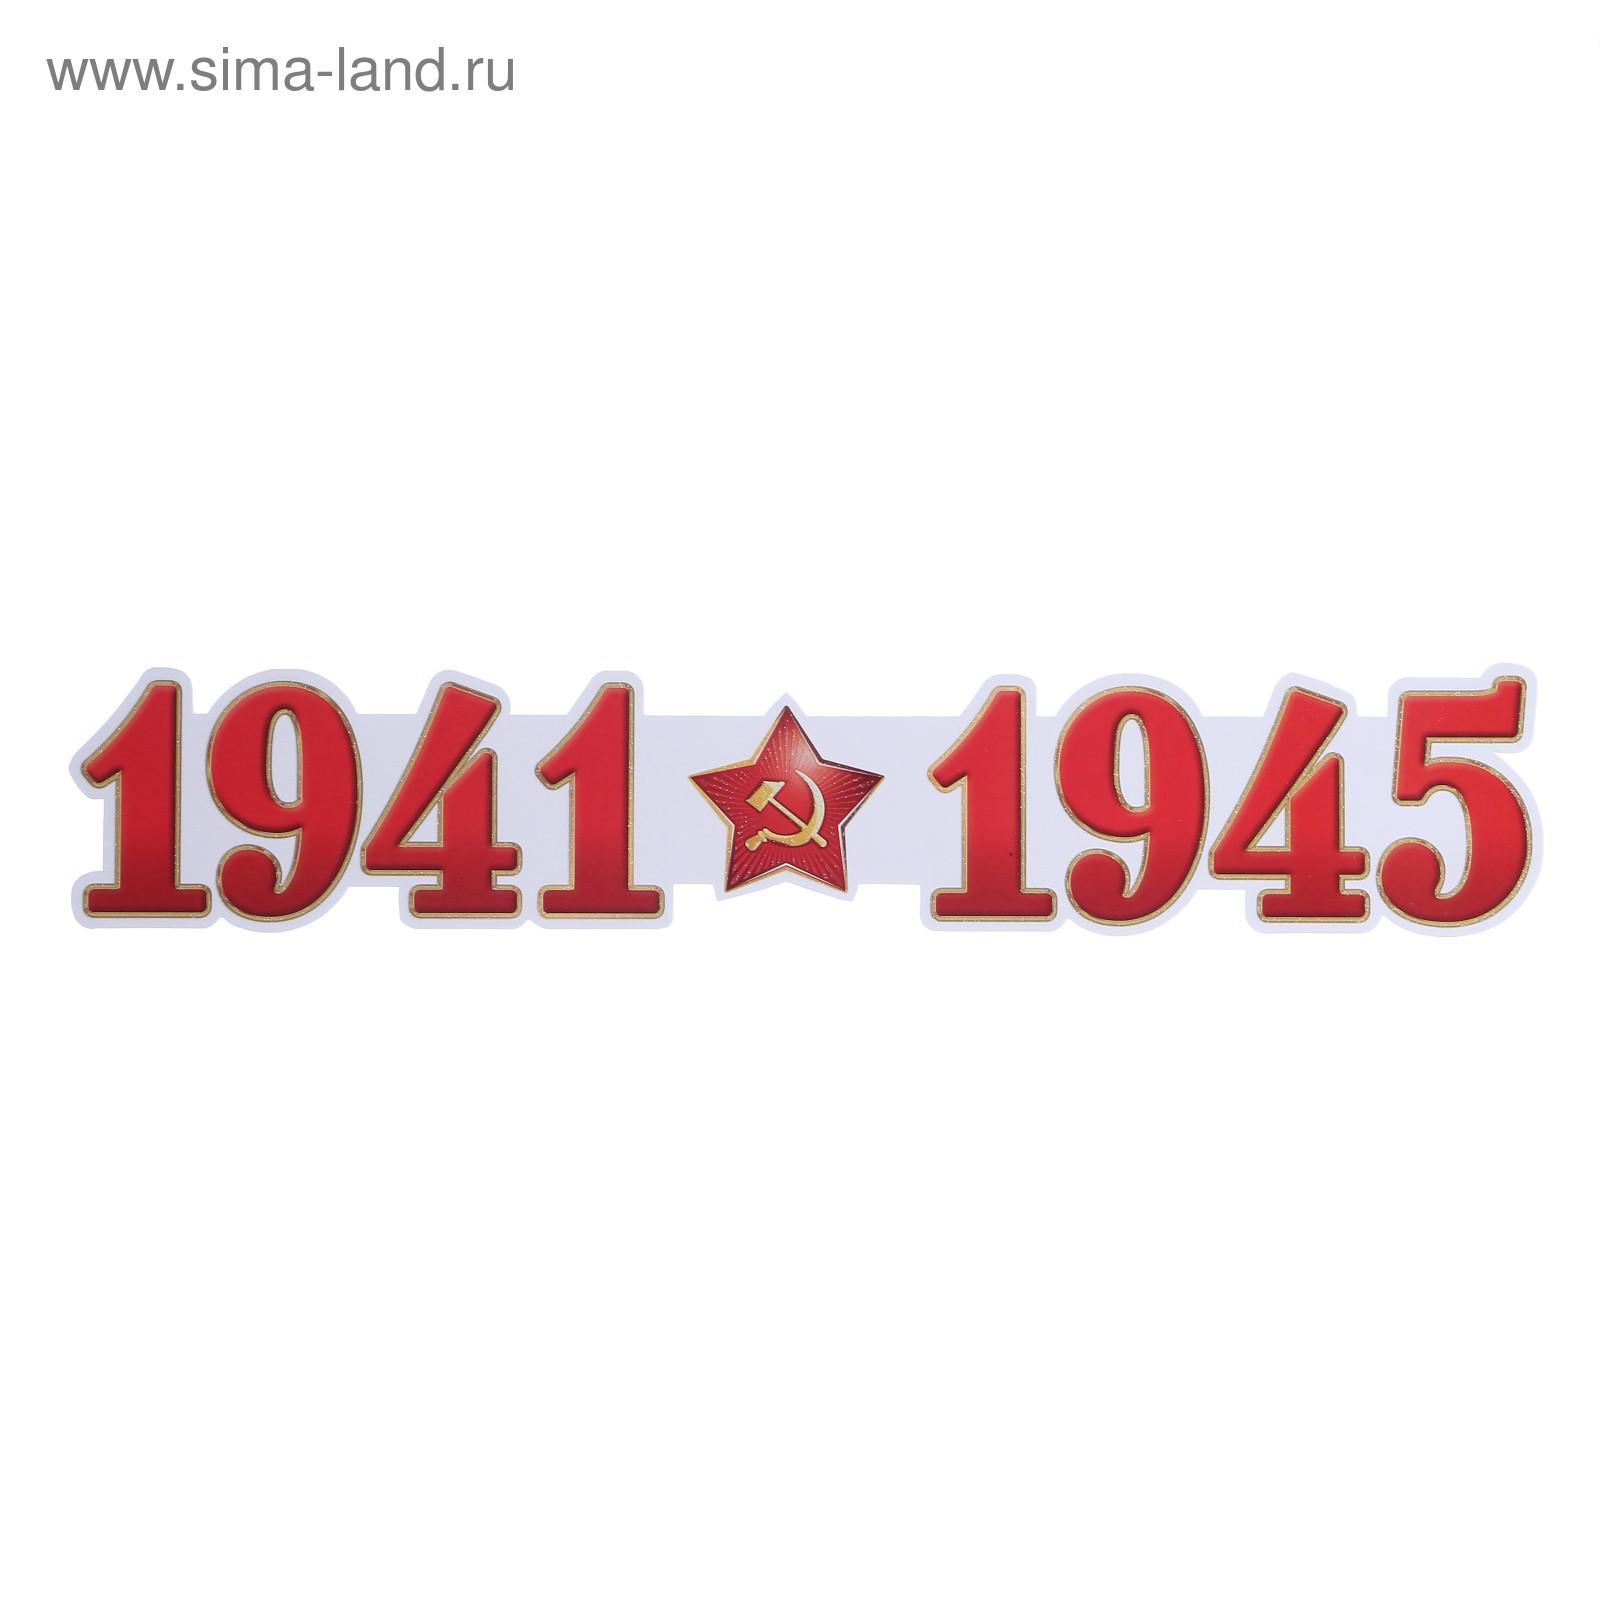 1941-1945 Надпись красная